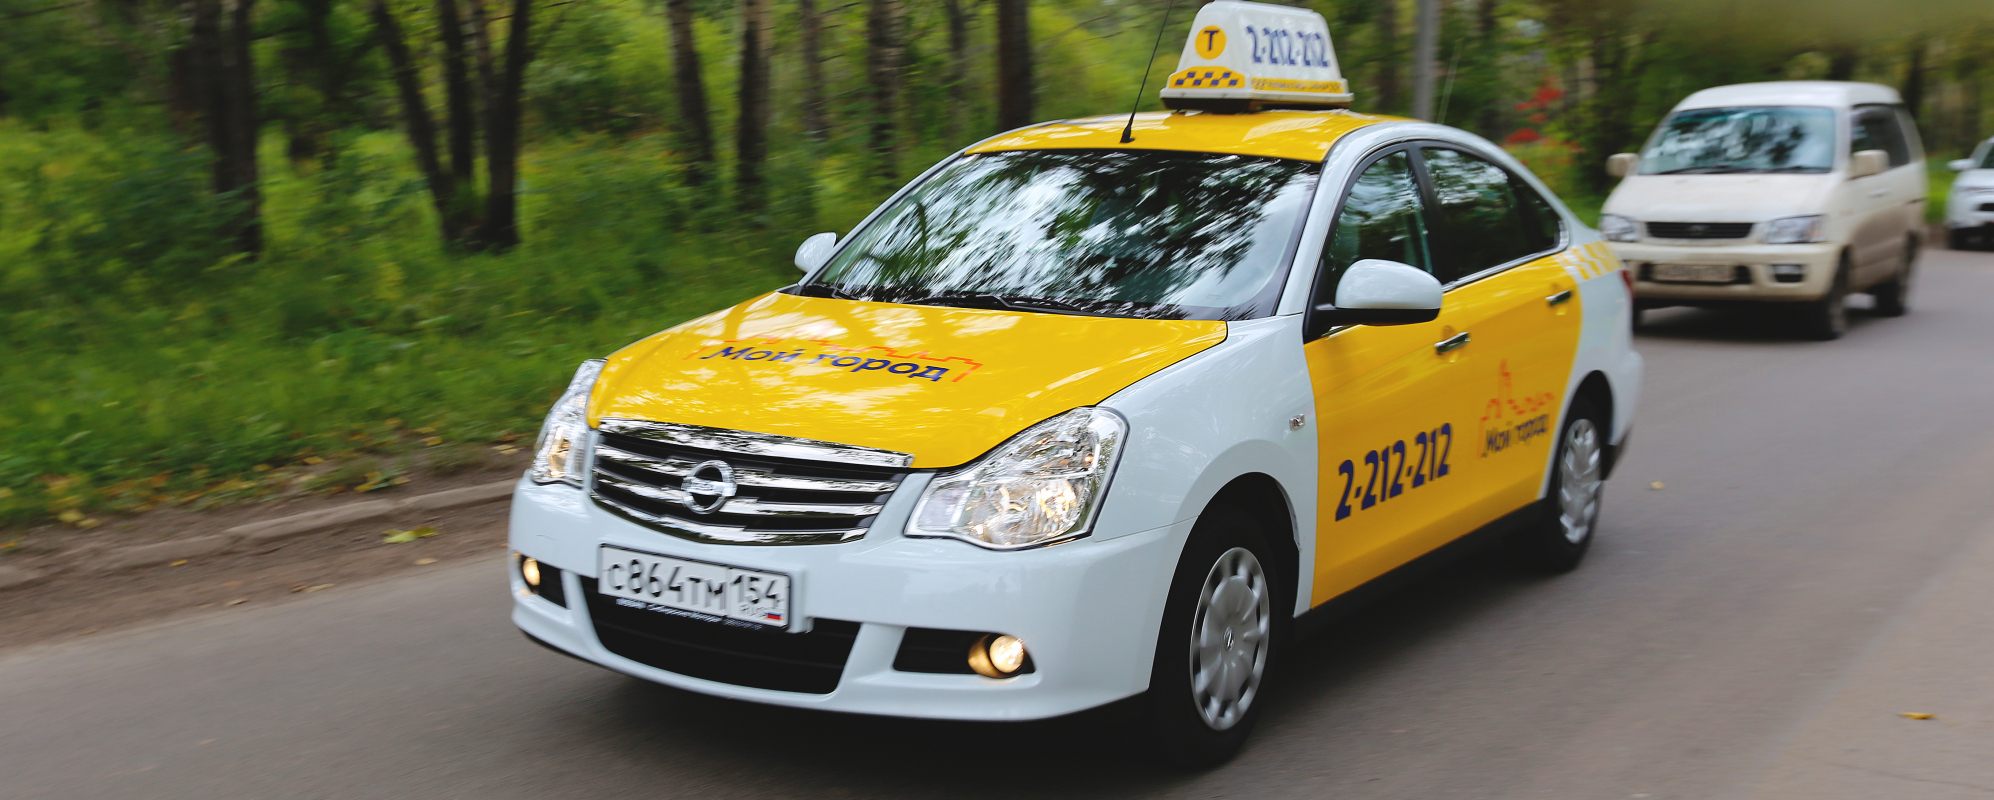 Номер телефона новосибирского такси. Такси Новосибирск. Такси в городе. Машина такси в городе. Такси за город.